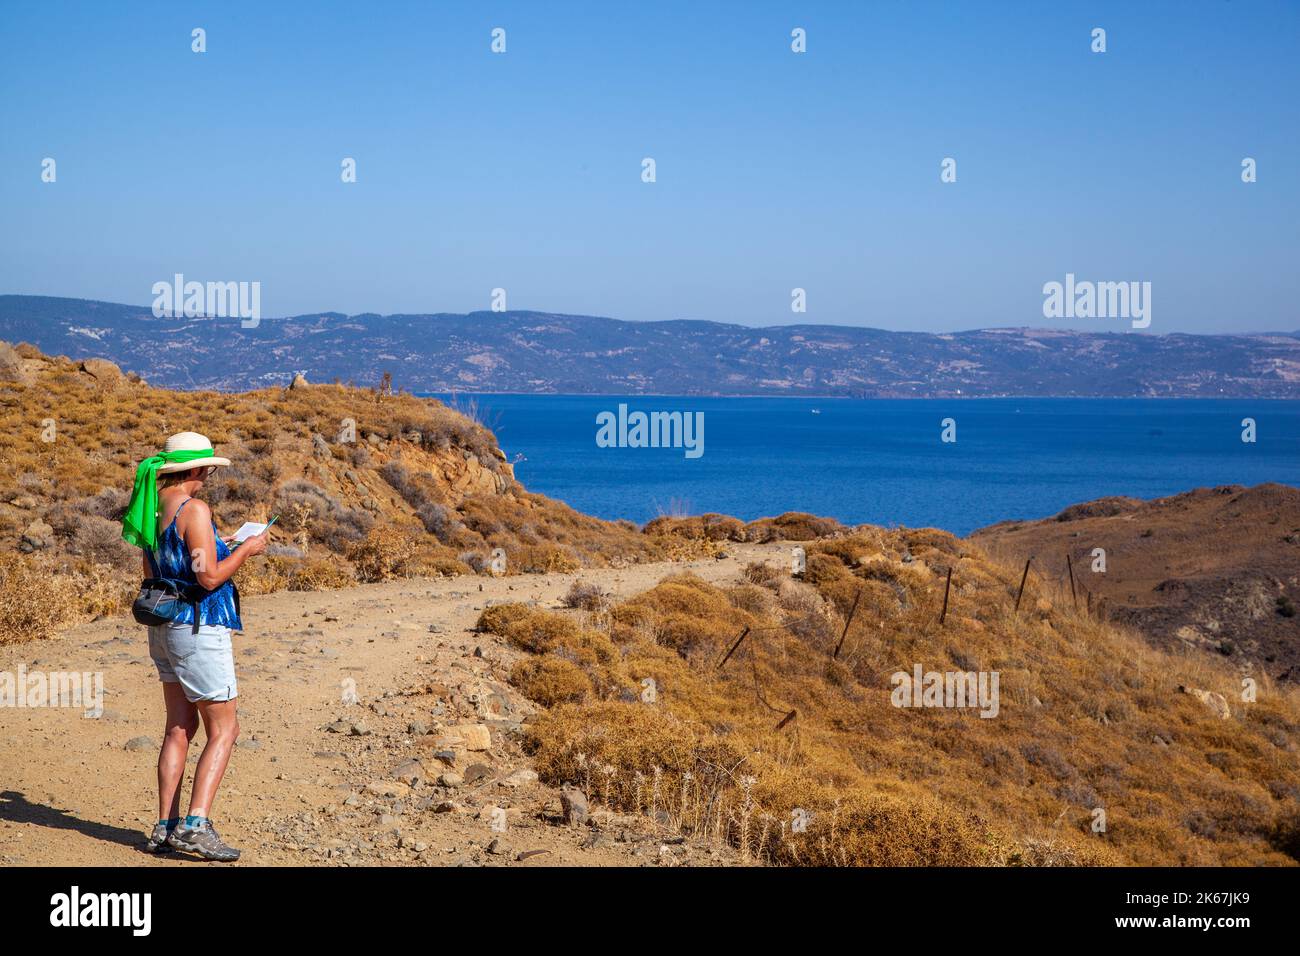 Frau, die in den Hügeln über dem griechischen Ferienort Molyvos auf der Insel Lesvos Griechenland über der Ägäis in Richtung Türkei spazierend ist Stockfoto